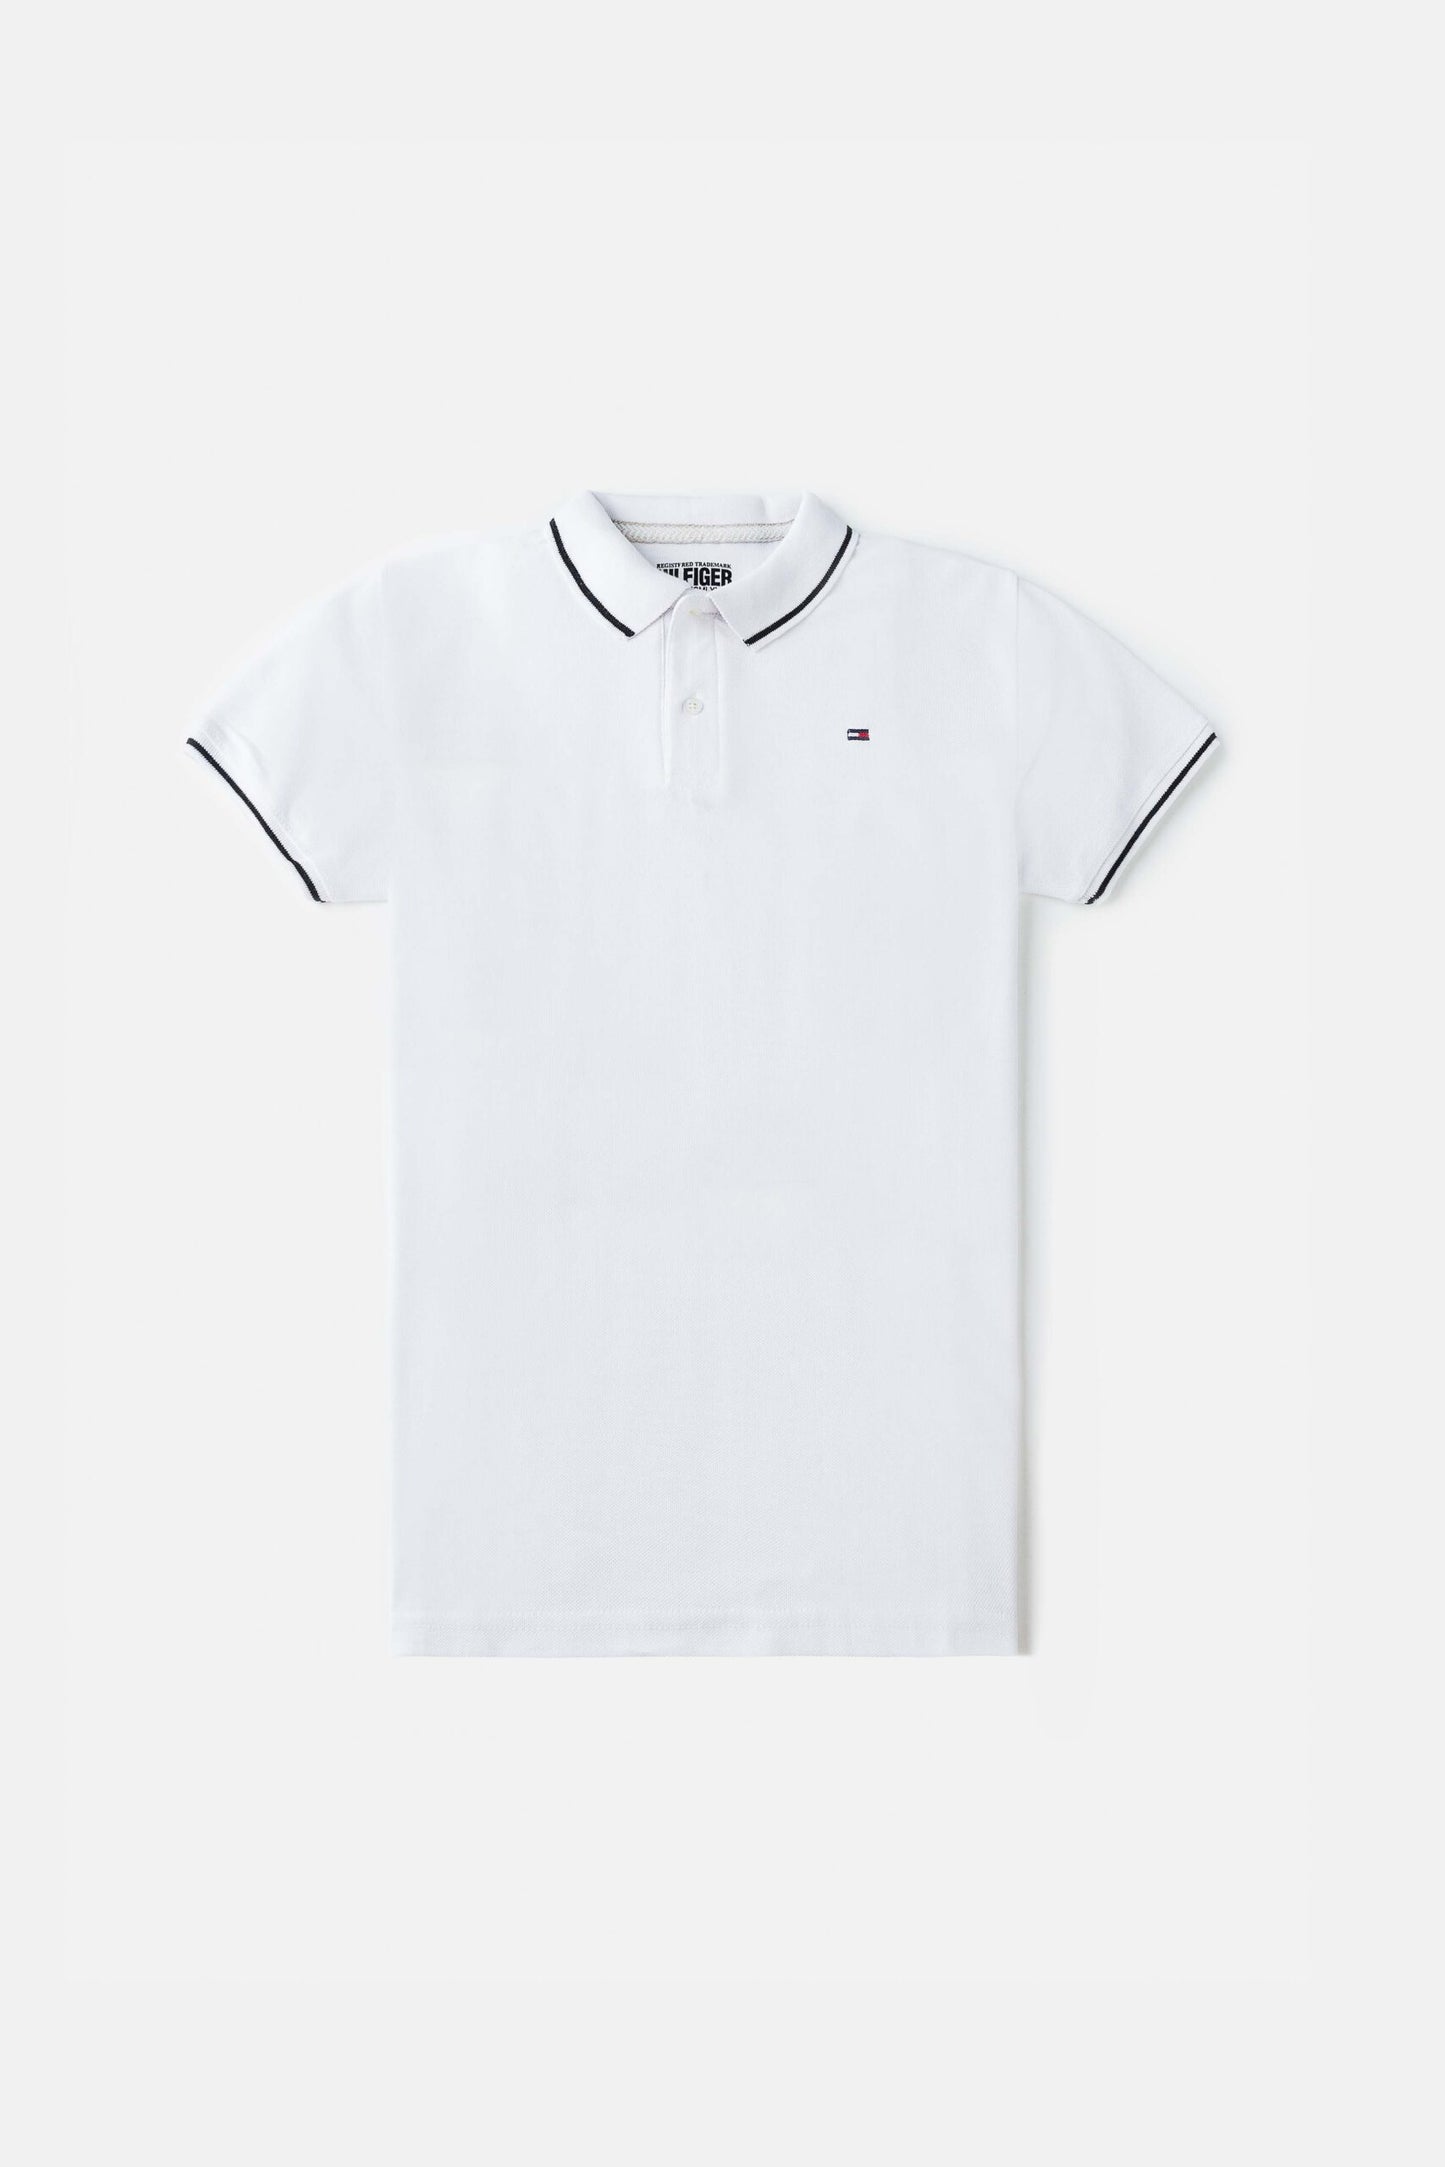 TM Tipped Cotton Polo shirt -White